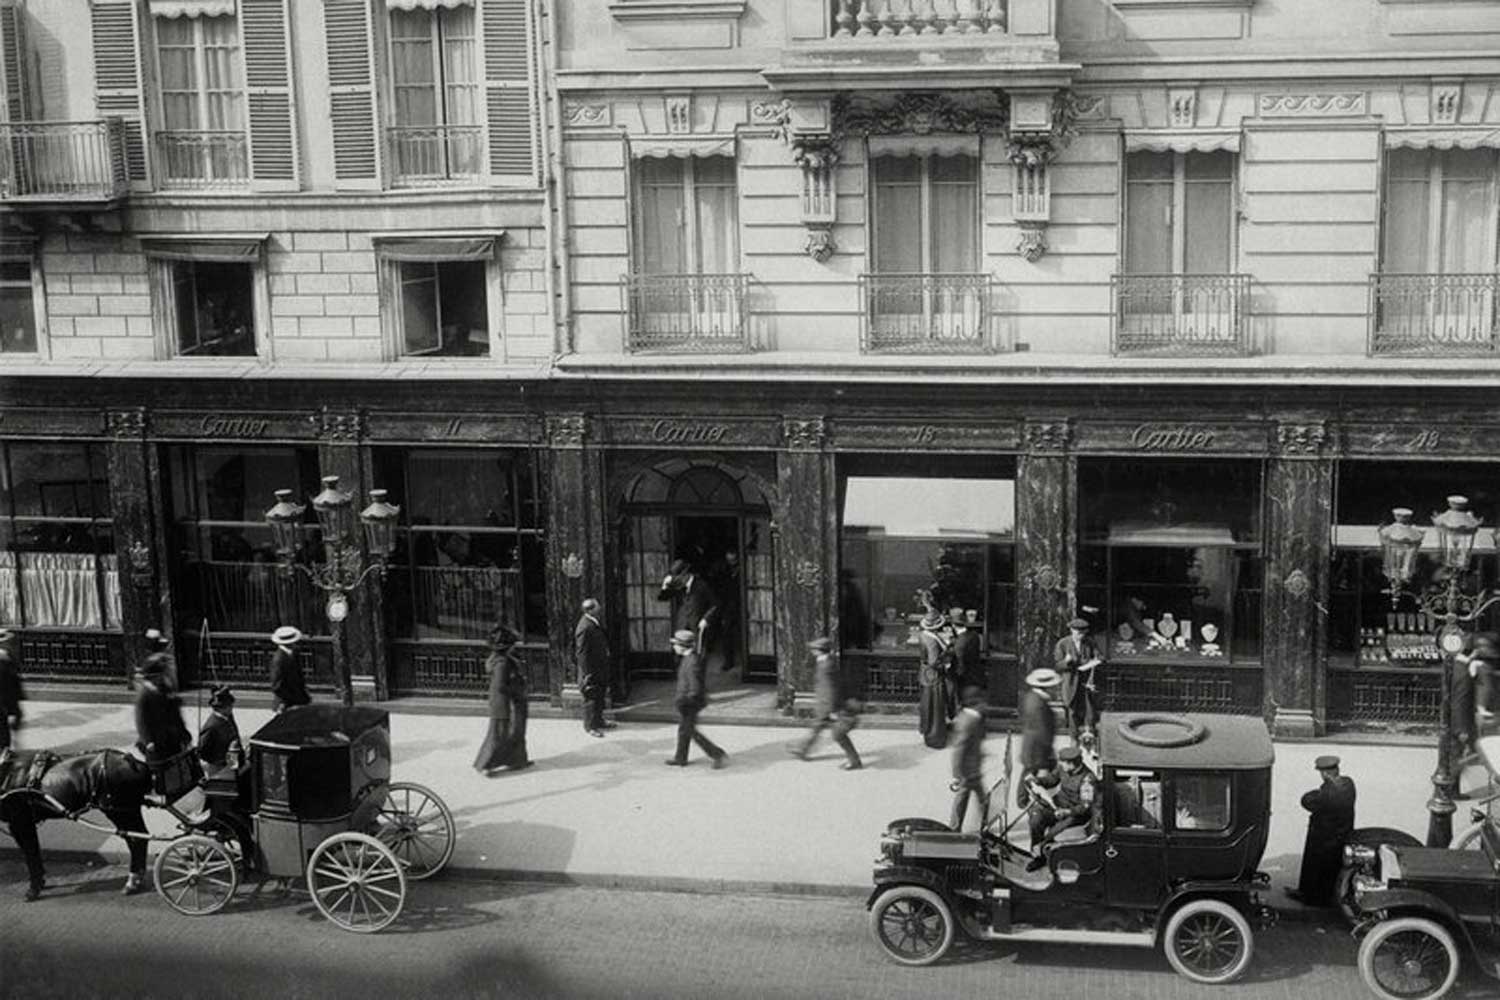 Cartier Paris at 13 rue de la Paix, 1915 (image: Cartier)